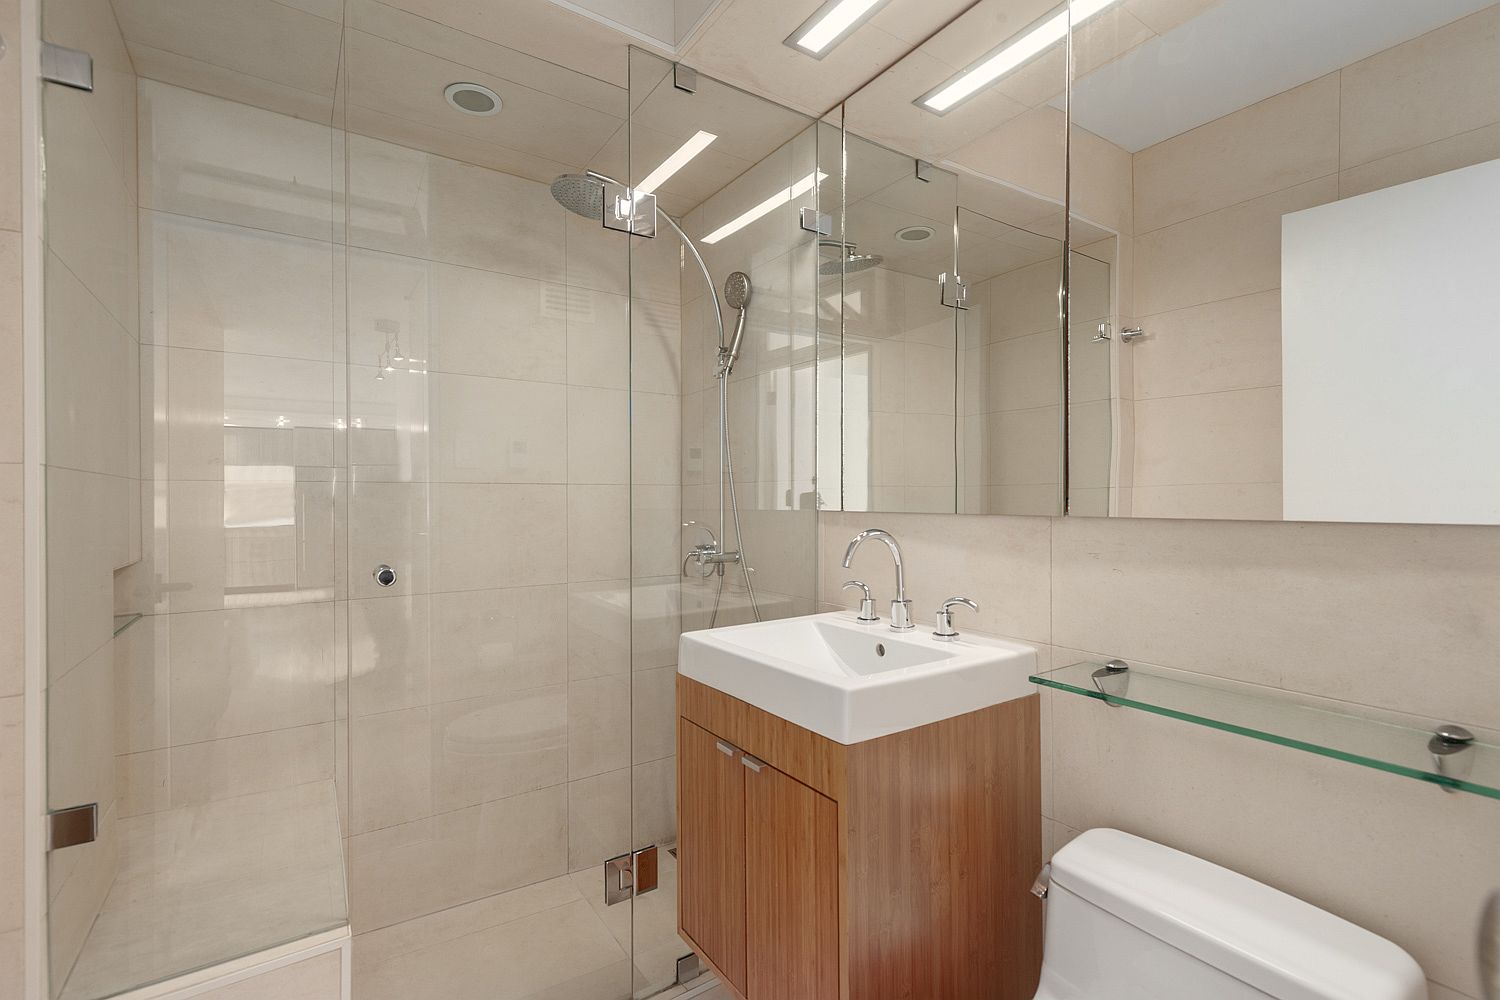 Elegant and efficient contemporary bathroom design